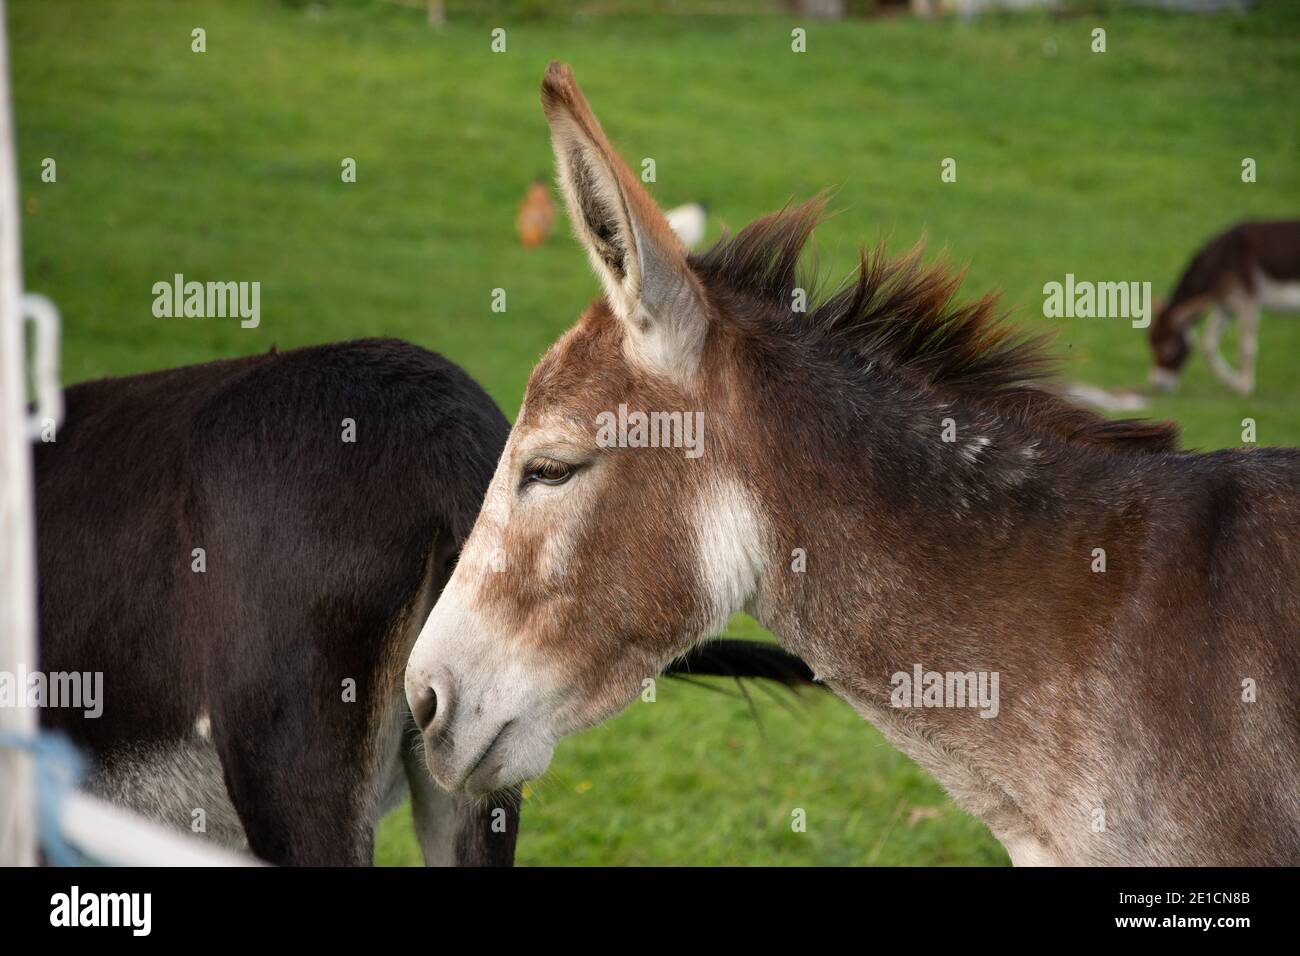 Donkeys in a field on a farm Stock Photo